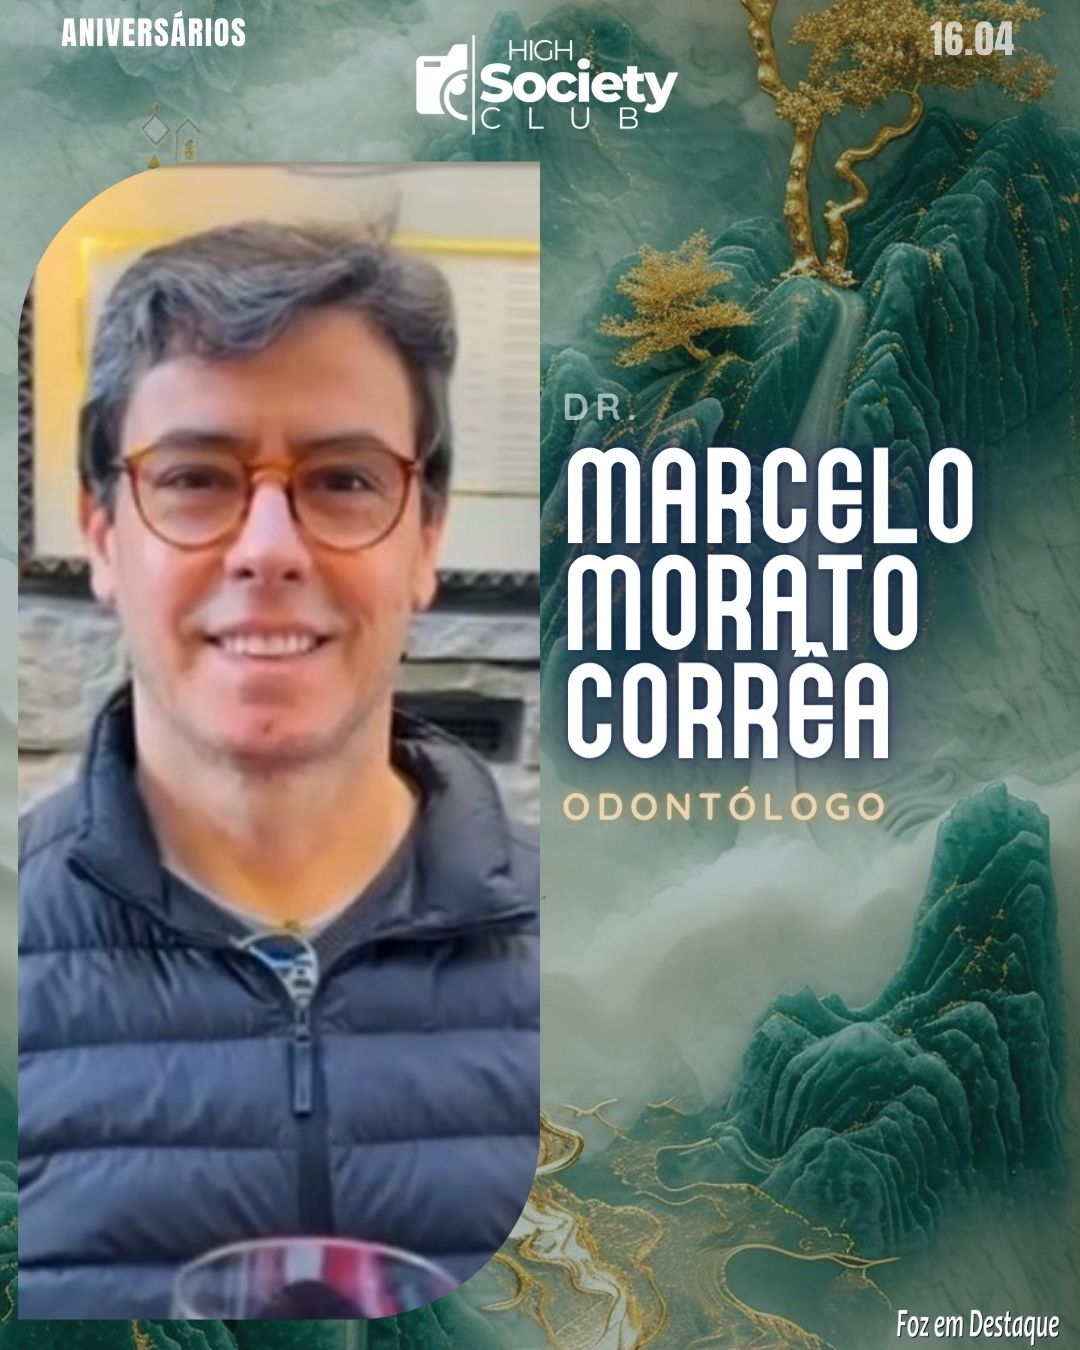 Dr. 

Marcelo Morato Corrêa  - Odontólogo Implantodontista e Endodontista
High Society Club Foz em Destaque